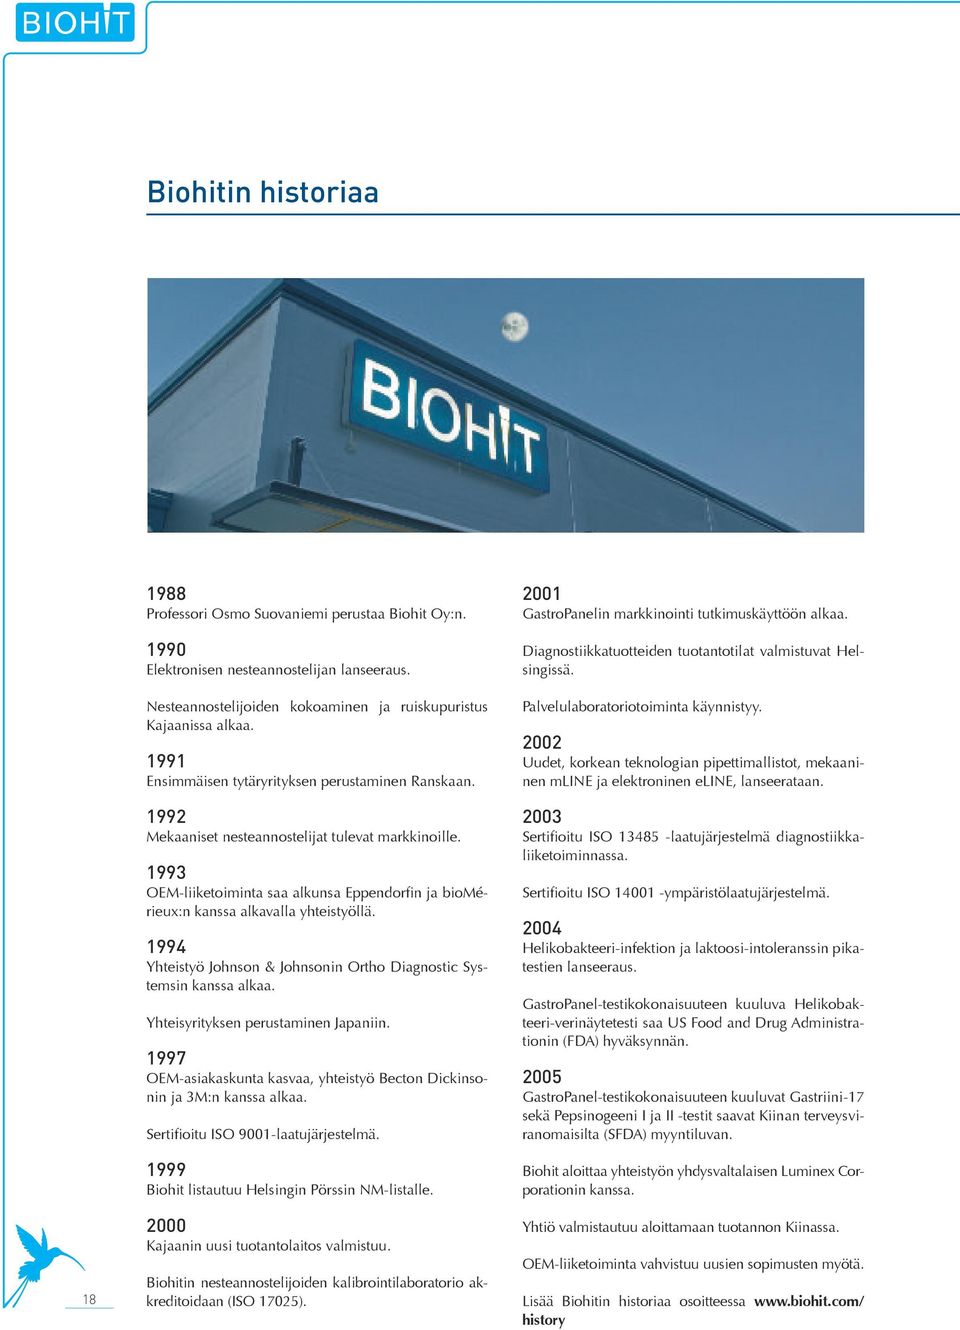 1993 OEM-liiketoiminta saa alkunsa Eppendorfin ja biomérieux:n kanssa alkavalla yhteistyöllä. 1994 Yhteistyö Johnson & Johnsonin Ortho Diagnostic Systemsin kanssa alkaa.